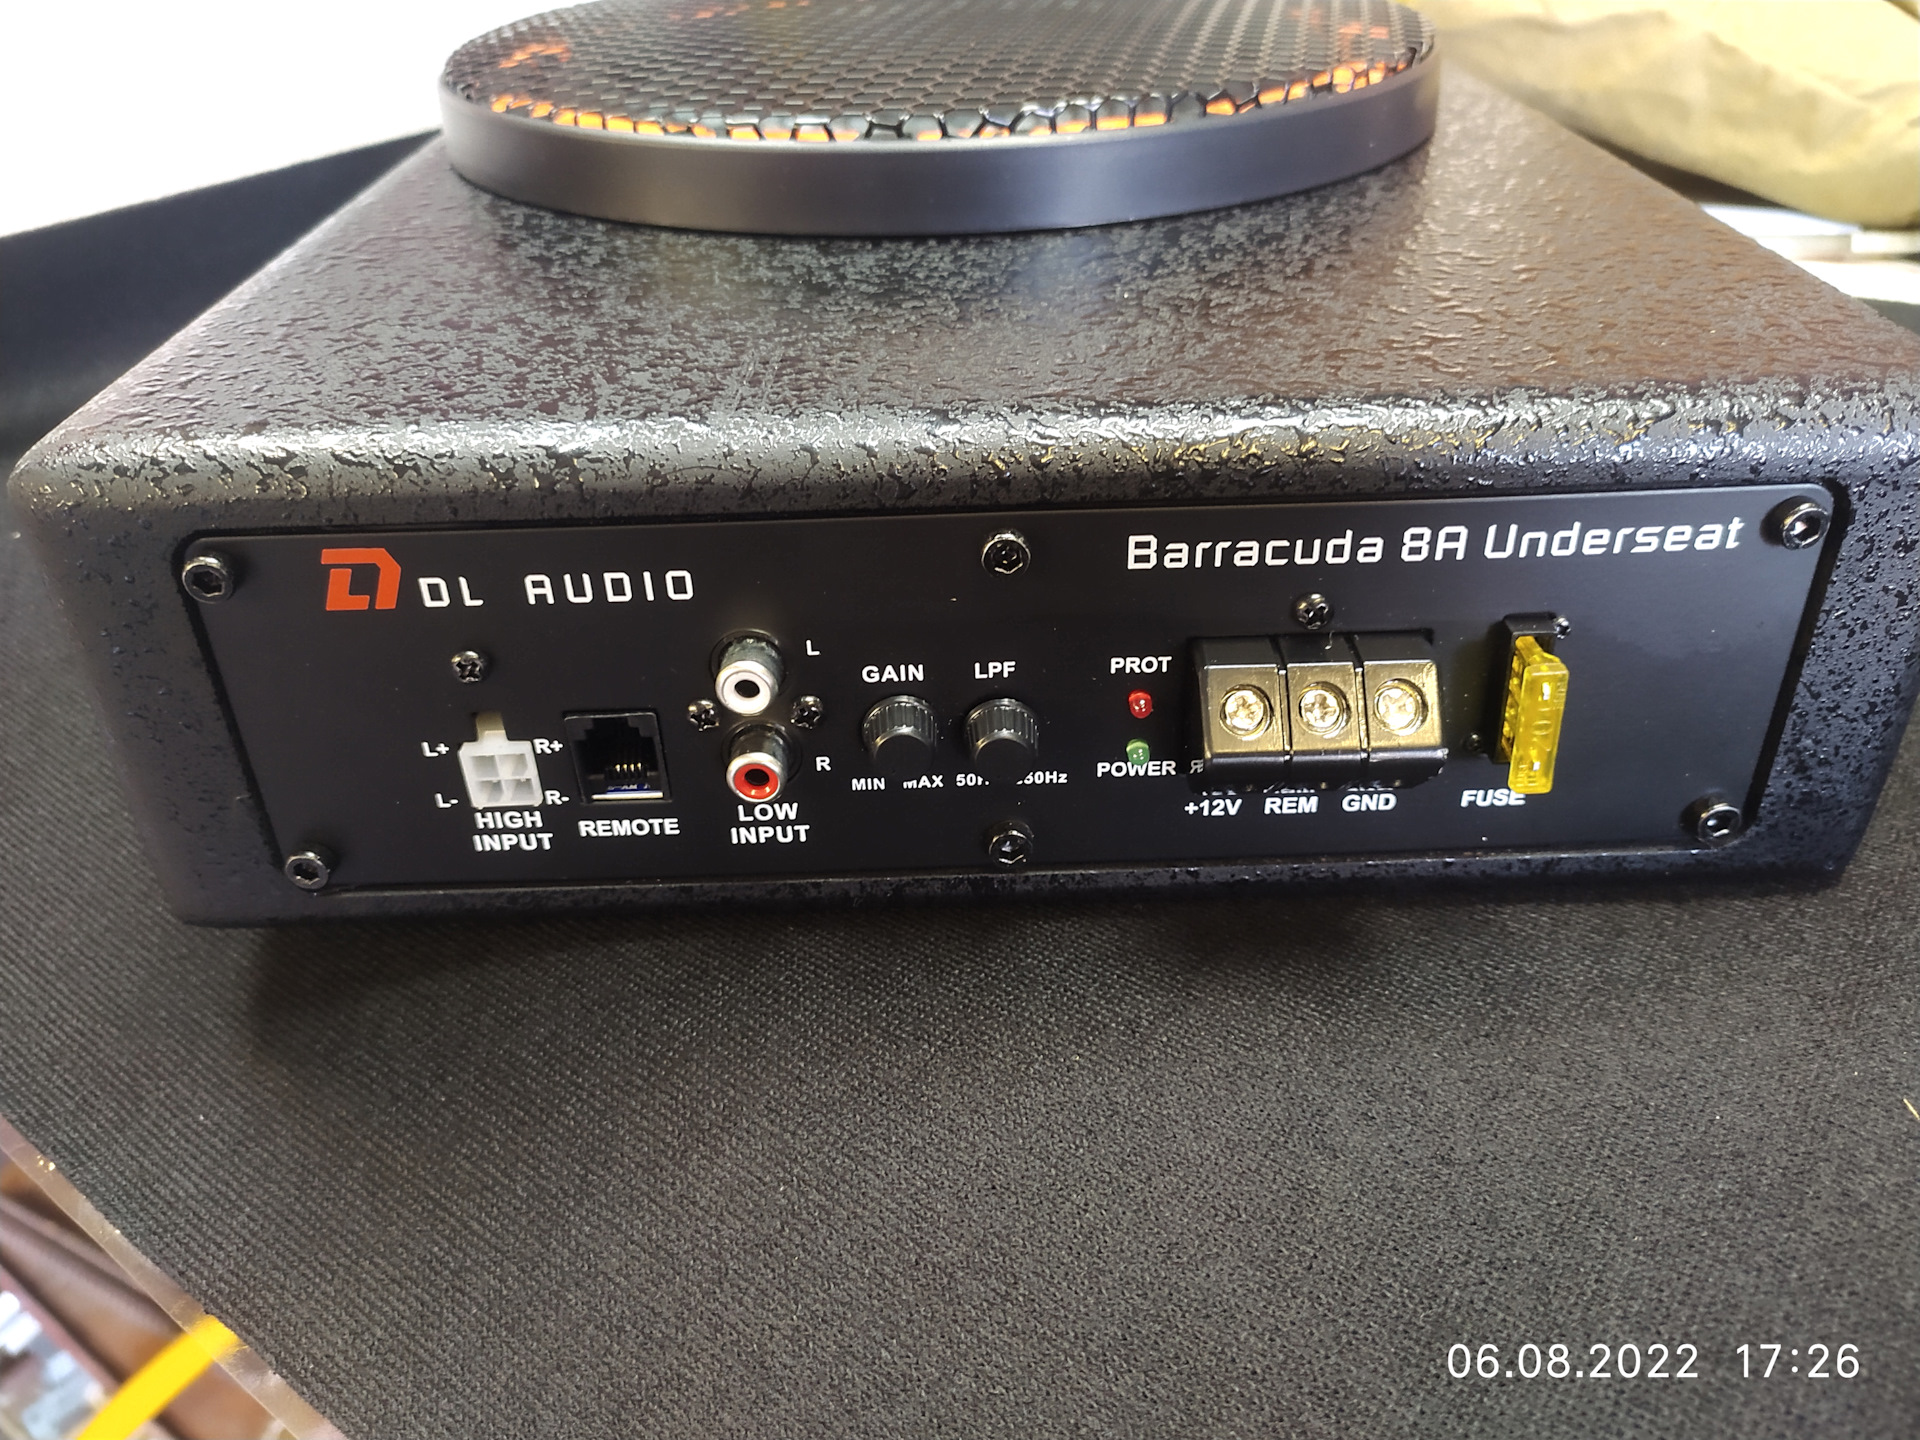 DL Audio Barracuda 8a. Сабвуфер DL Barracuda 10”. Активный сабвуфер DL Audio Barracuda 8a Underseat. DJ Audio Barracuda 8. Dl barracuda 8 flat